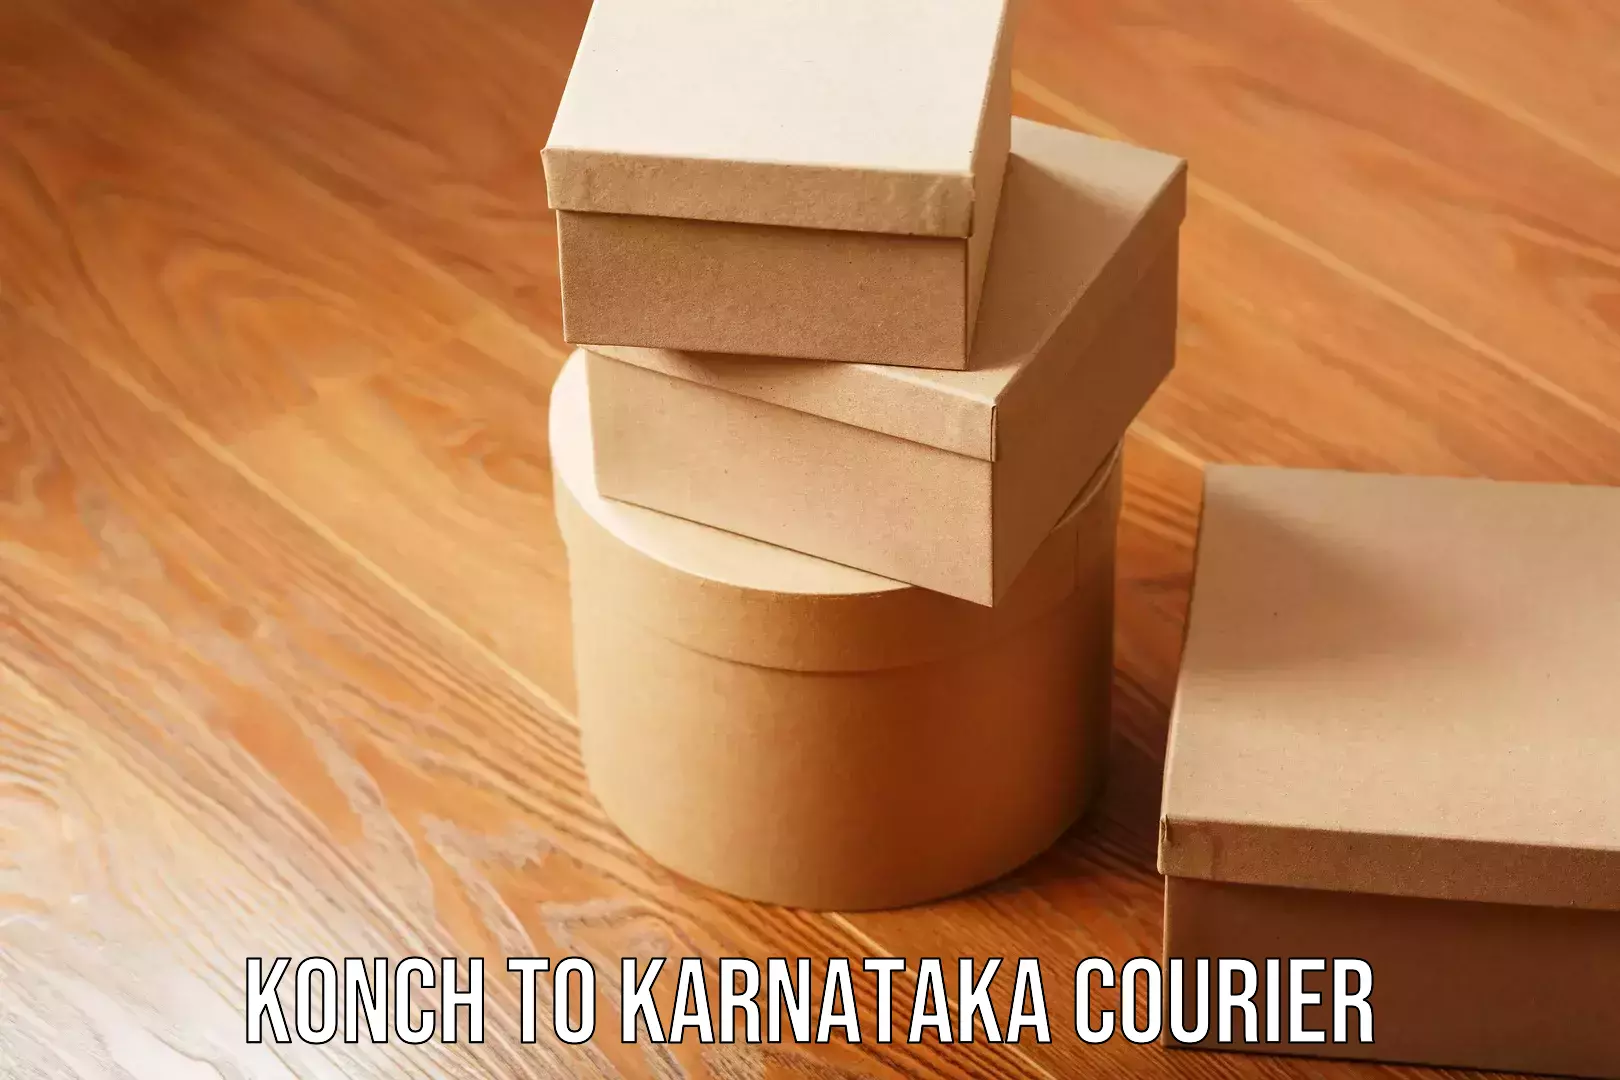 Skilled furniture transport Konch to Karnataka